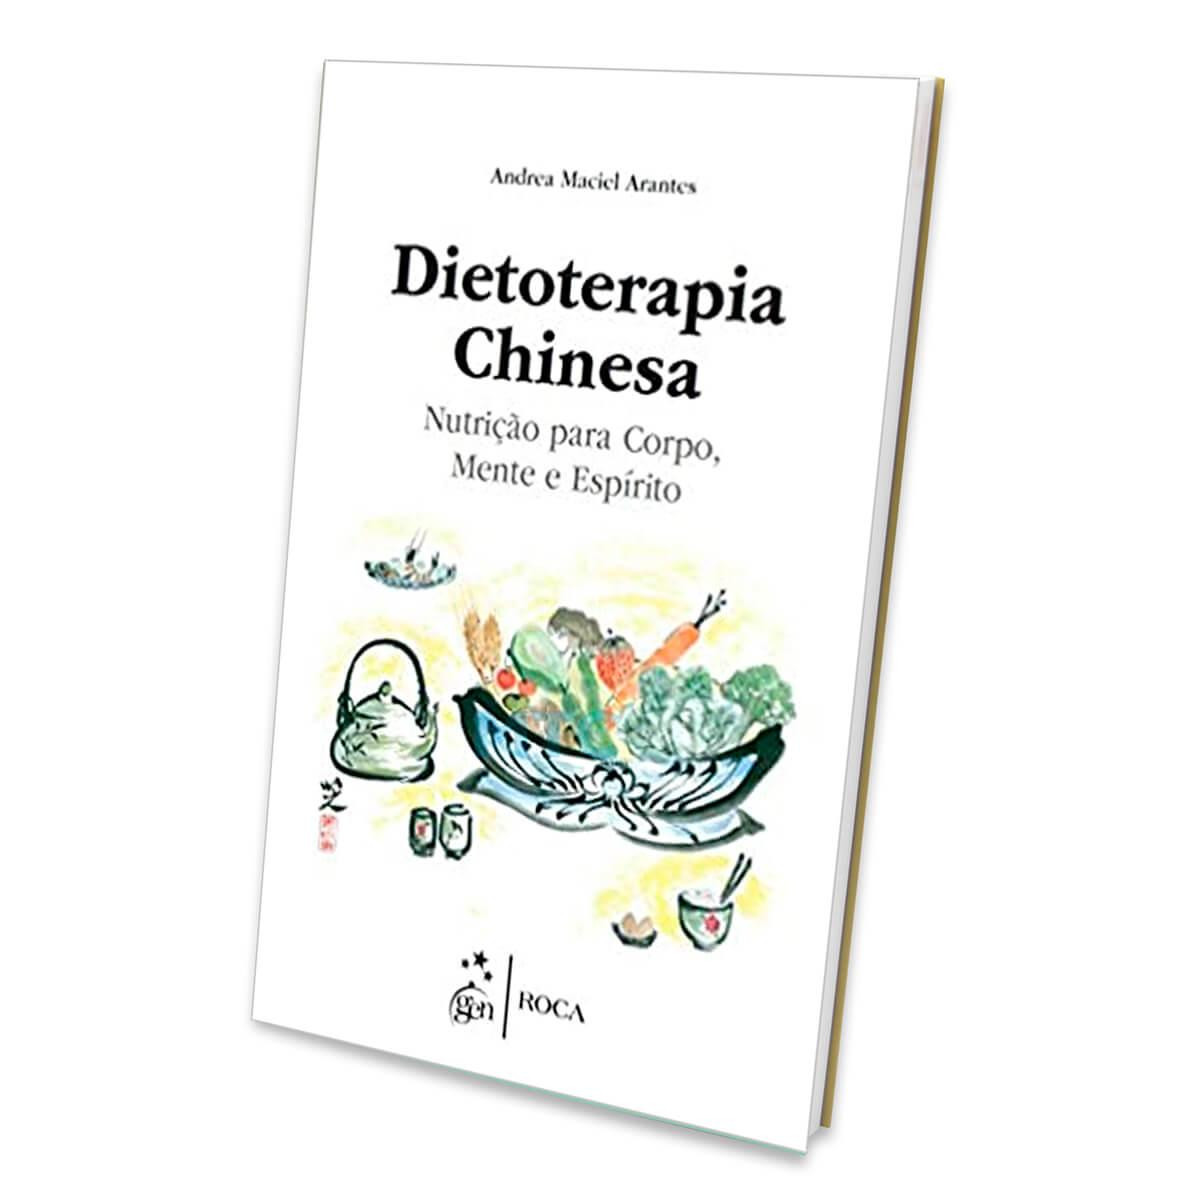 Dietoterapia Chinesa - Nutrição para o Corpo, Mente e Espírito 2ª Edição - Ed Roca